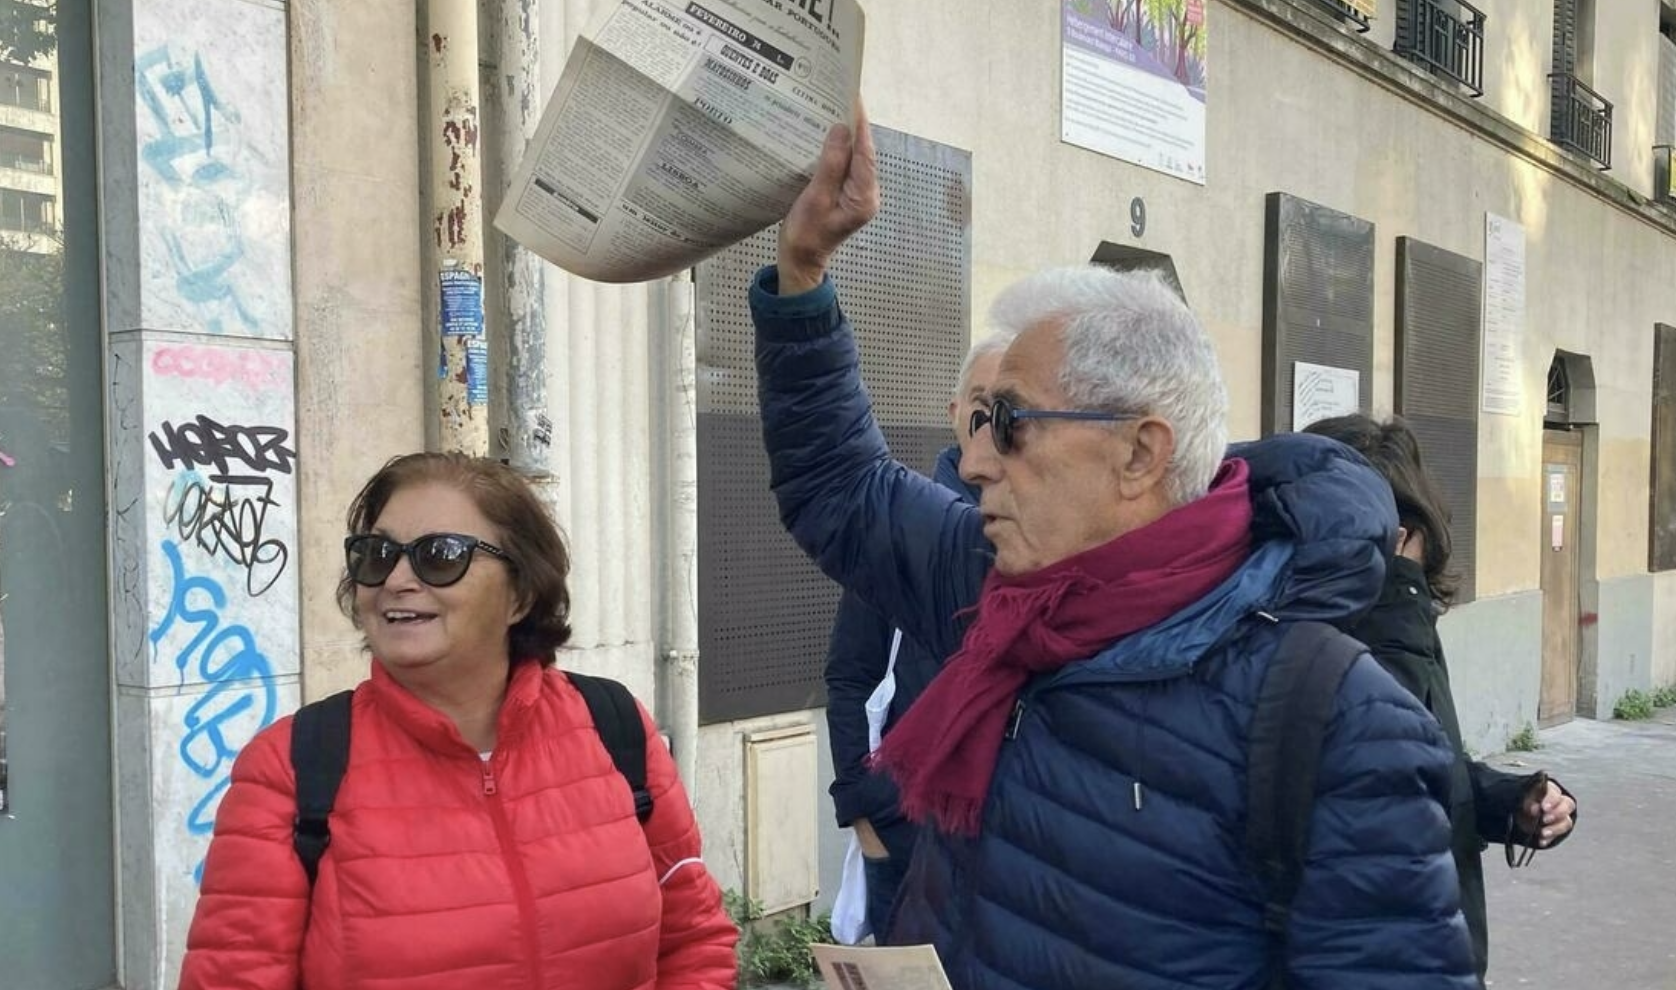 "Exilados políticos portugueses lembram chegada a Paris para abrir portas a outros refugiados"